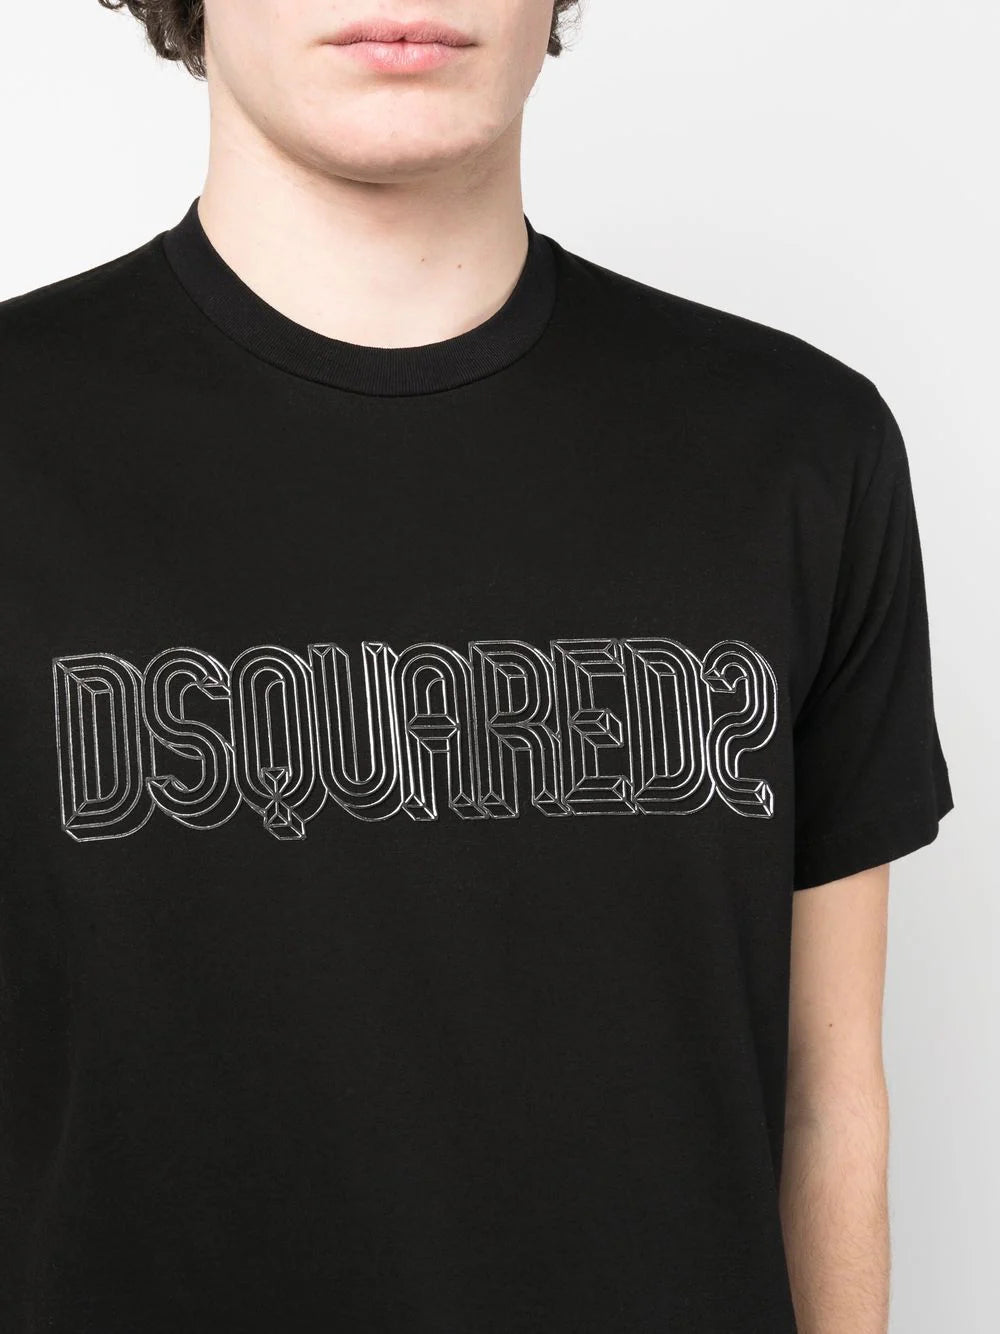 DSQUARED2 Graphic Print Cool 3D effect T-Shirt Black - MAISONDEFASHION.COM